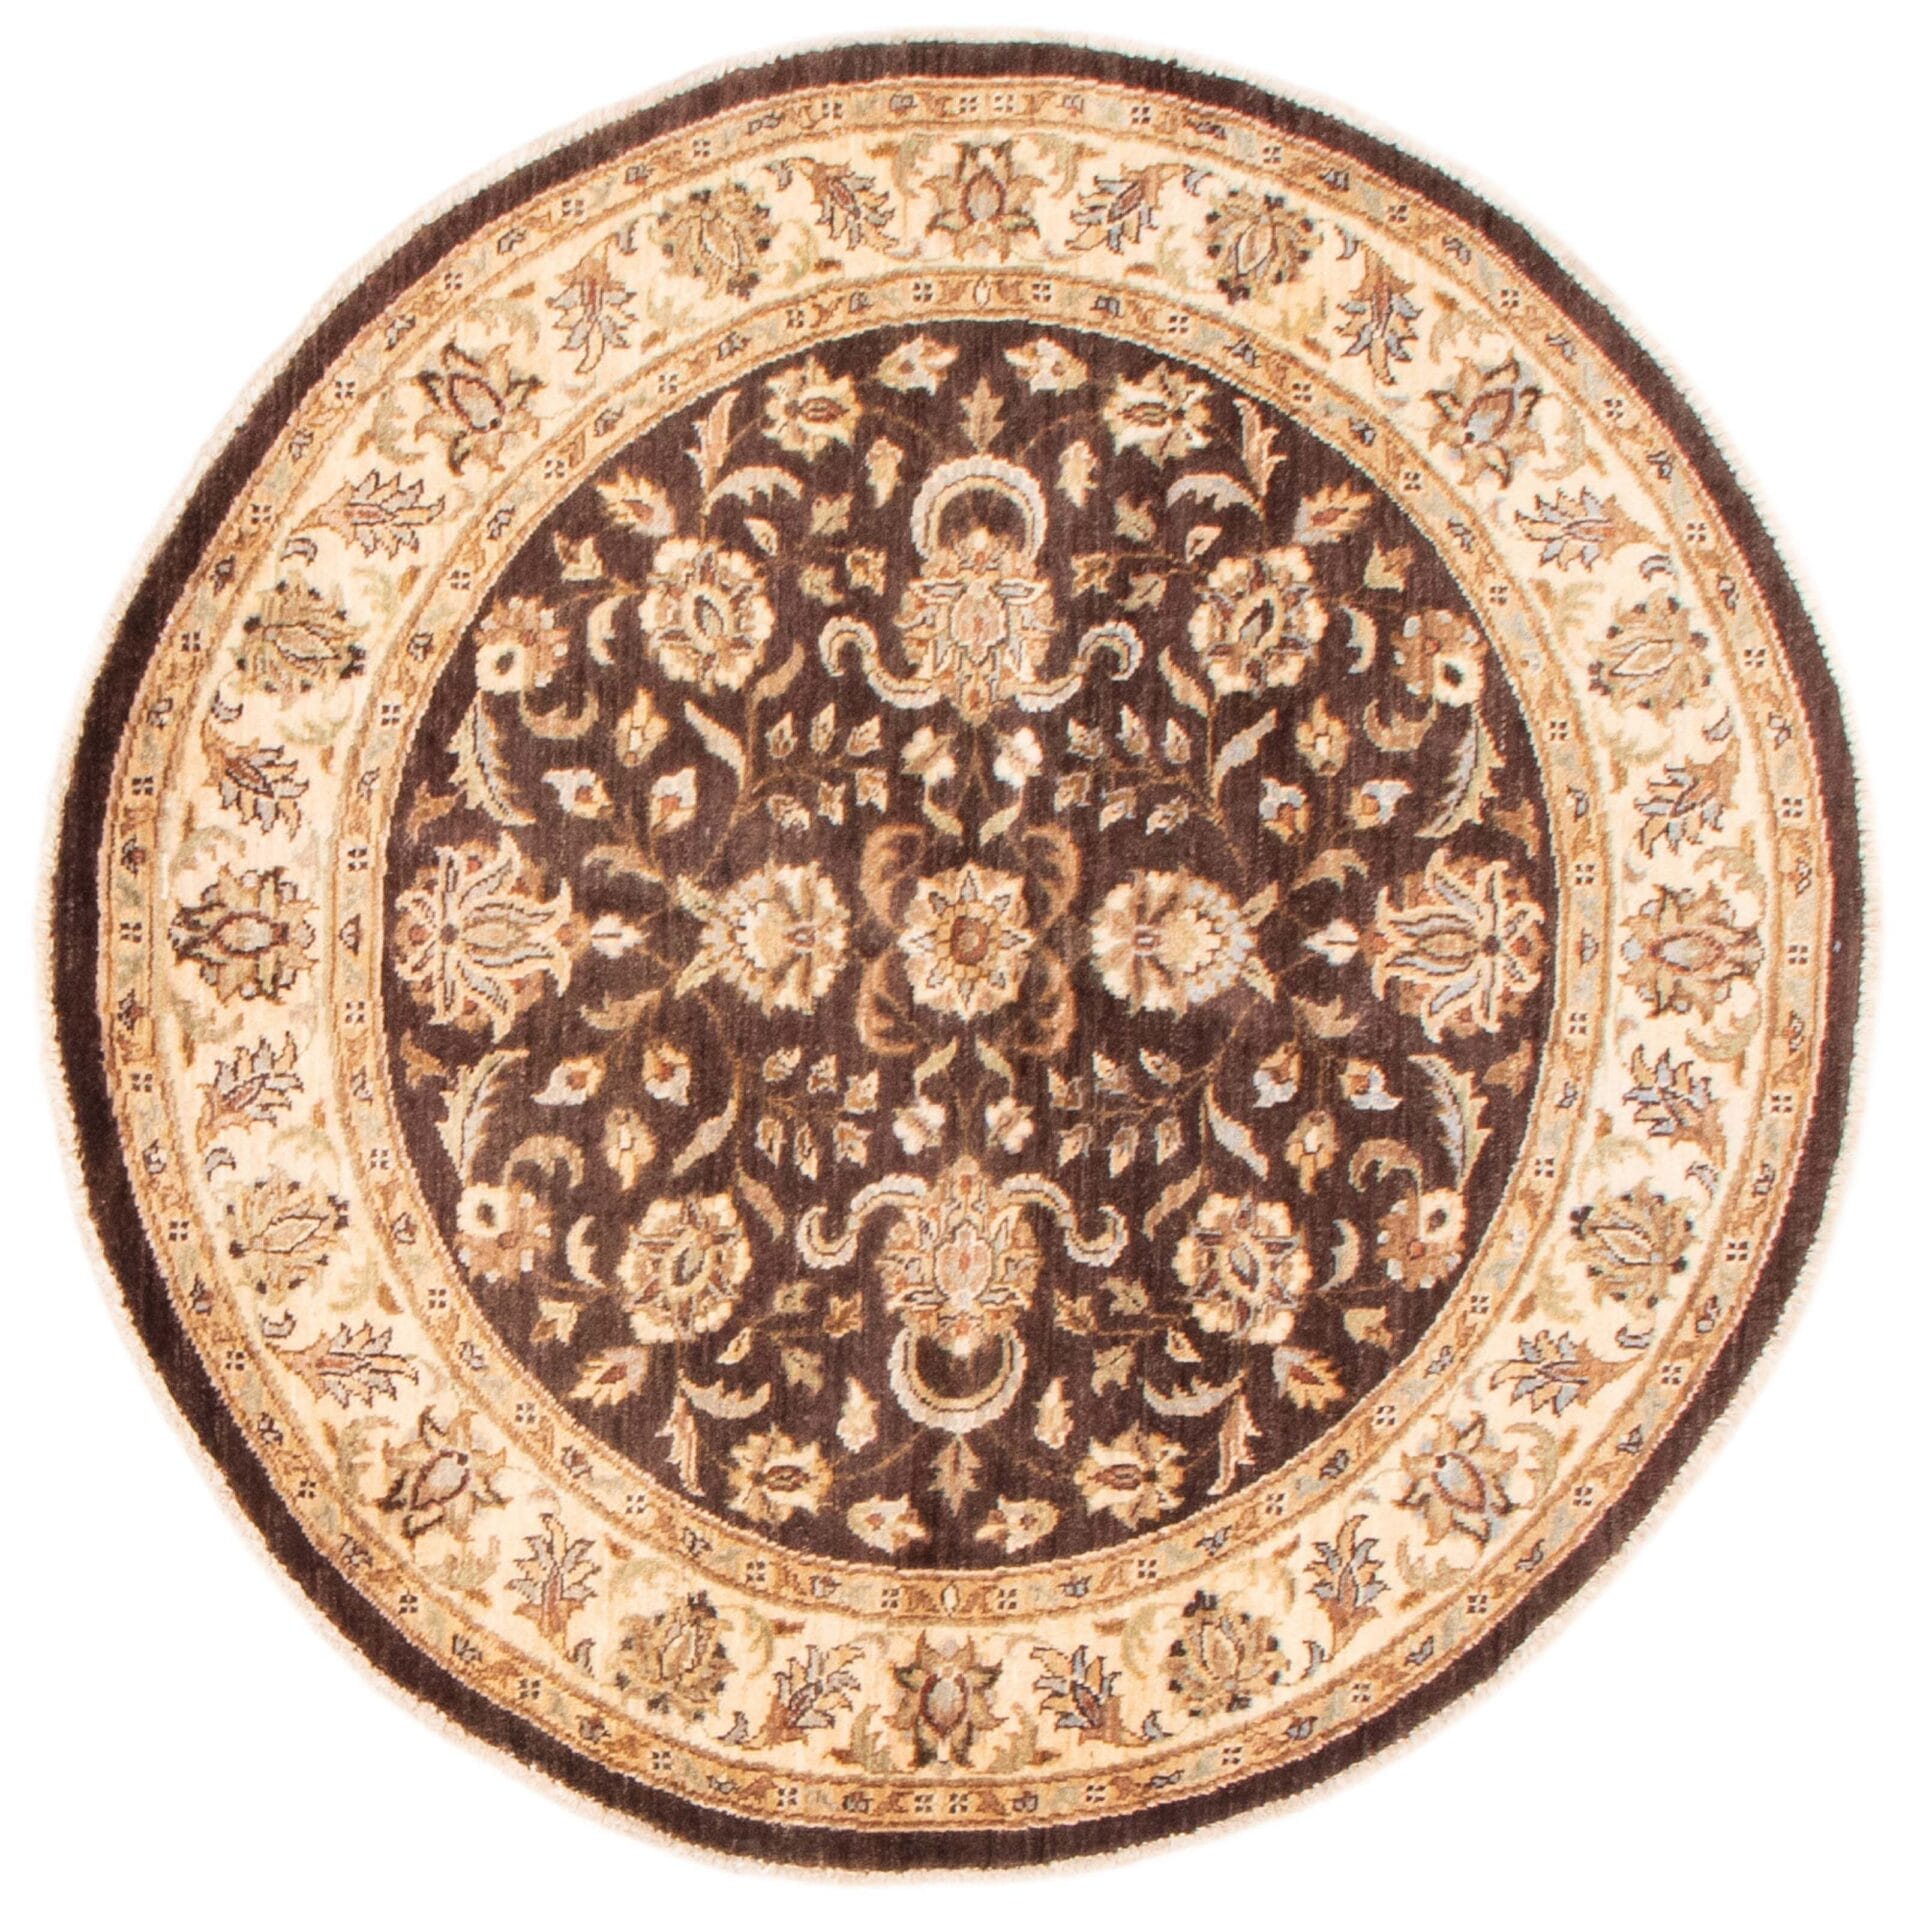 Een bruin en beige rond tapijt met bloemmotieven.